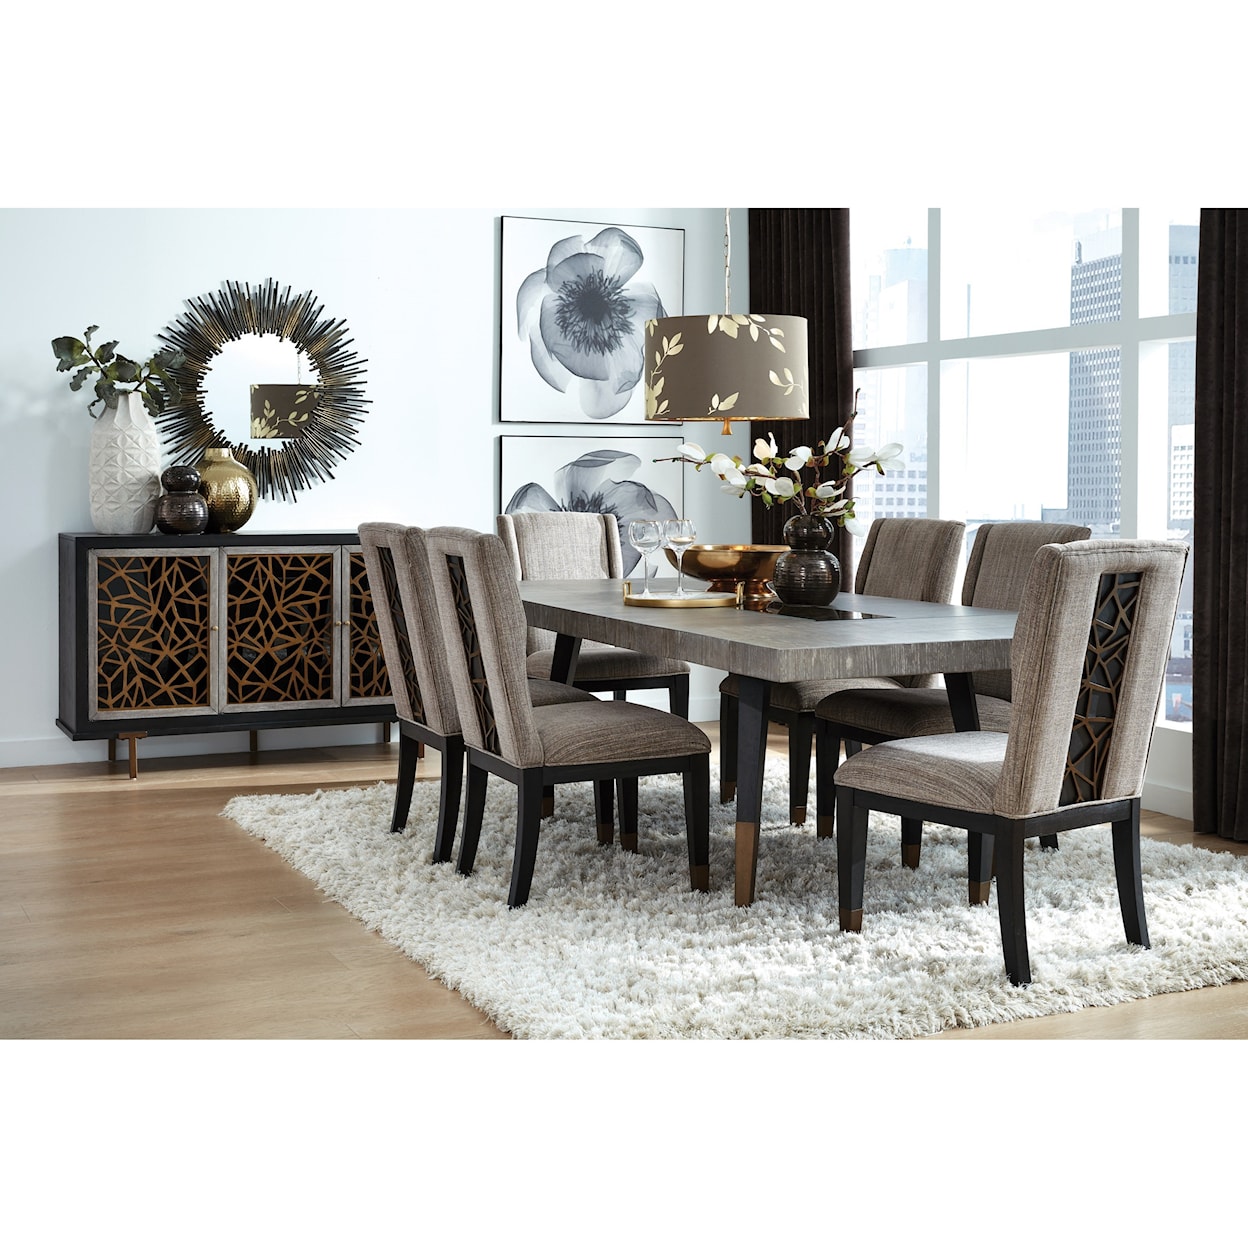 Belfort Select Shirlington Rectangular Dining Table